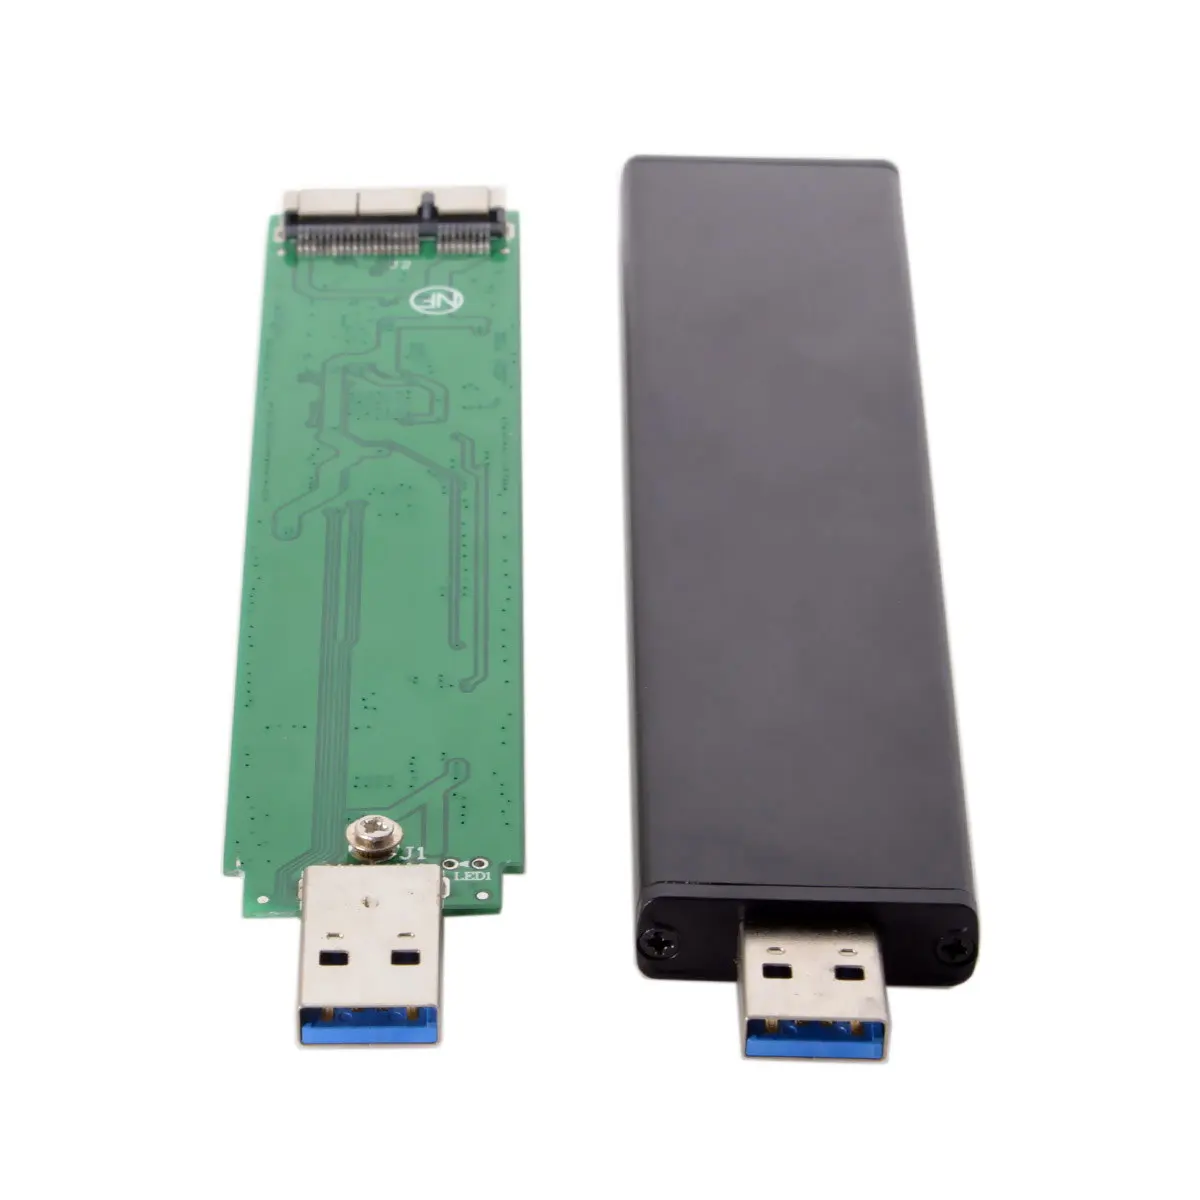 Jimier 17+7pin SSD HDD USB 3.0 Mees Kõvaketta Kassett Drive for Mac Book AIR A1465 A1466 MD223 MD224 MD231 MD213 MD232 2